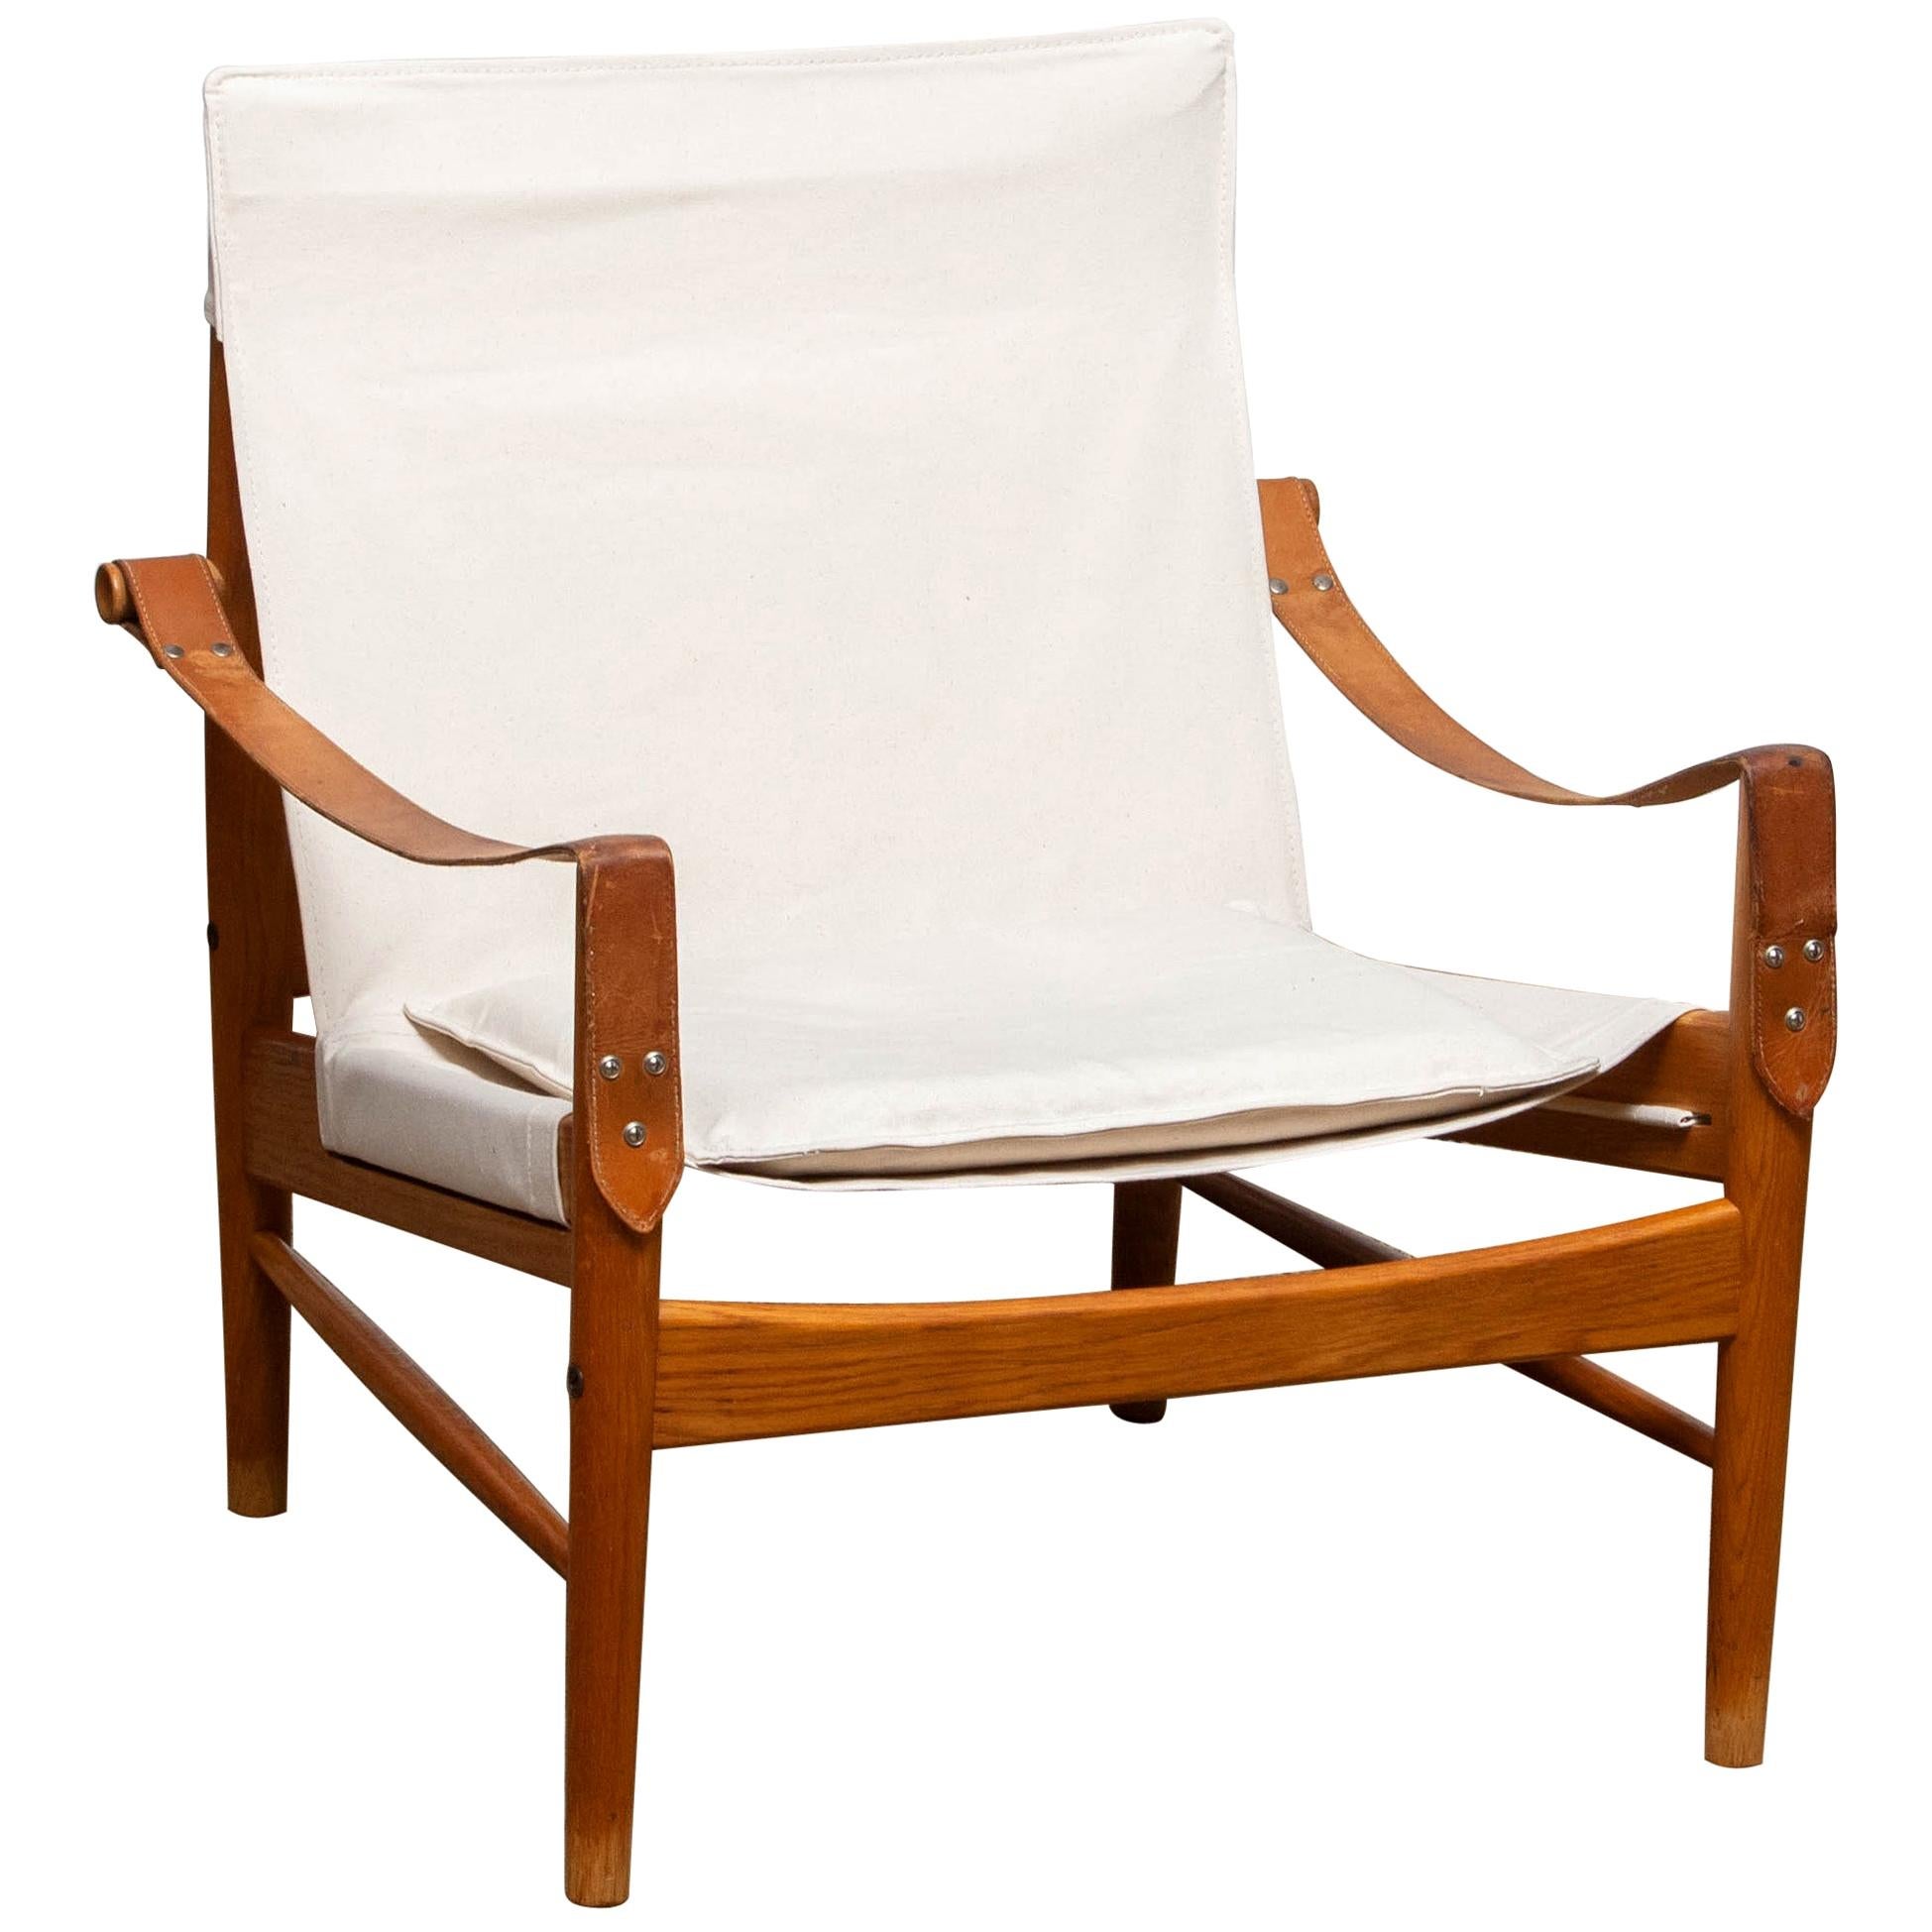 Magnifique chaise safari conçue par Hans Olsen pour Viska Möbler à Kinna, en Suède.
Ces chaises sont fabriquées en chêne et recouvertes d'une nouvelle toile.
Il est en très bon état et marqué.
Période : 1960s.
Dimensions : H 81 cm, L 73 cm, P 70 cm,